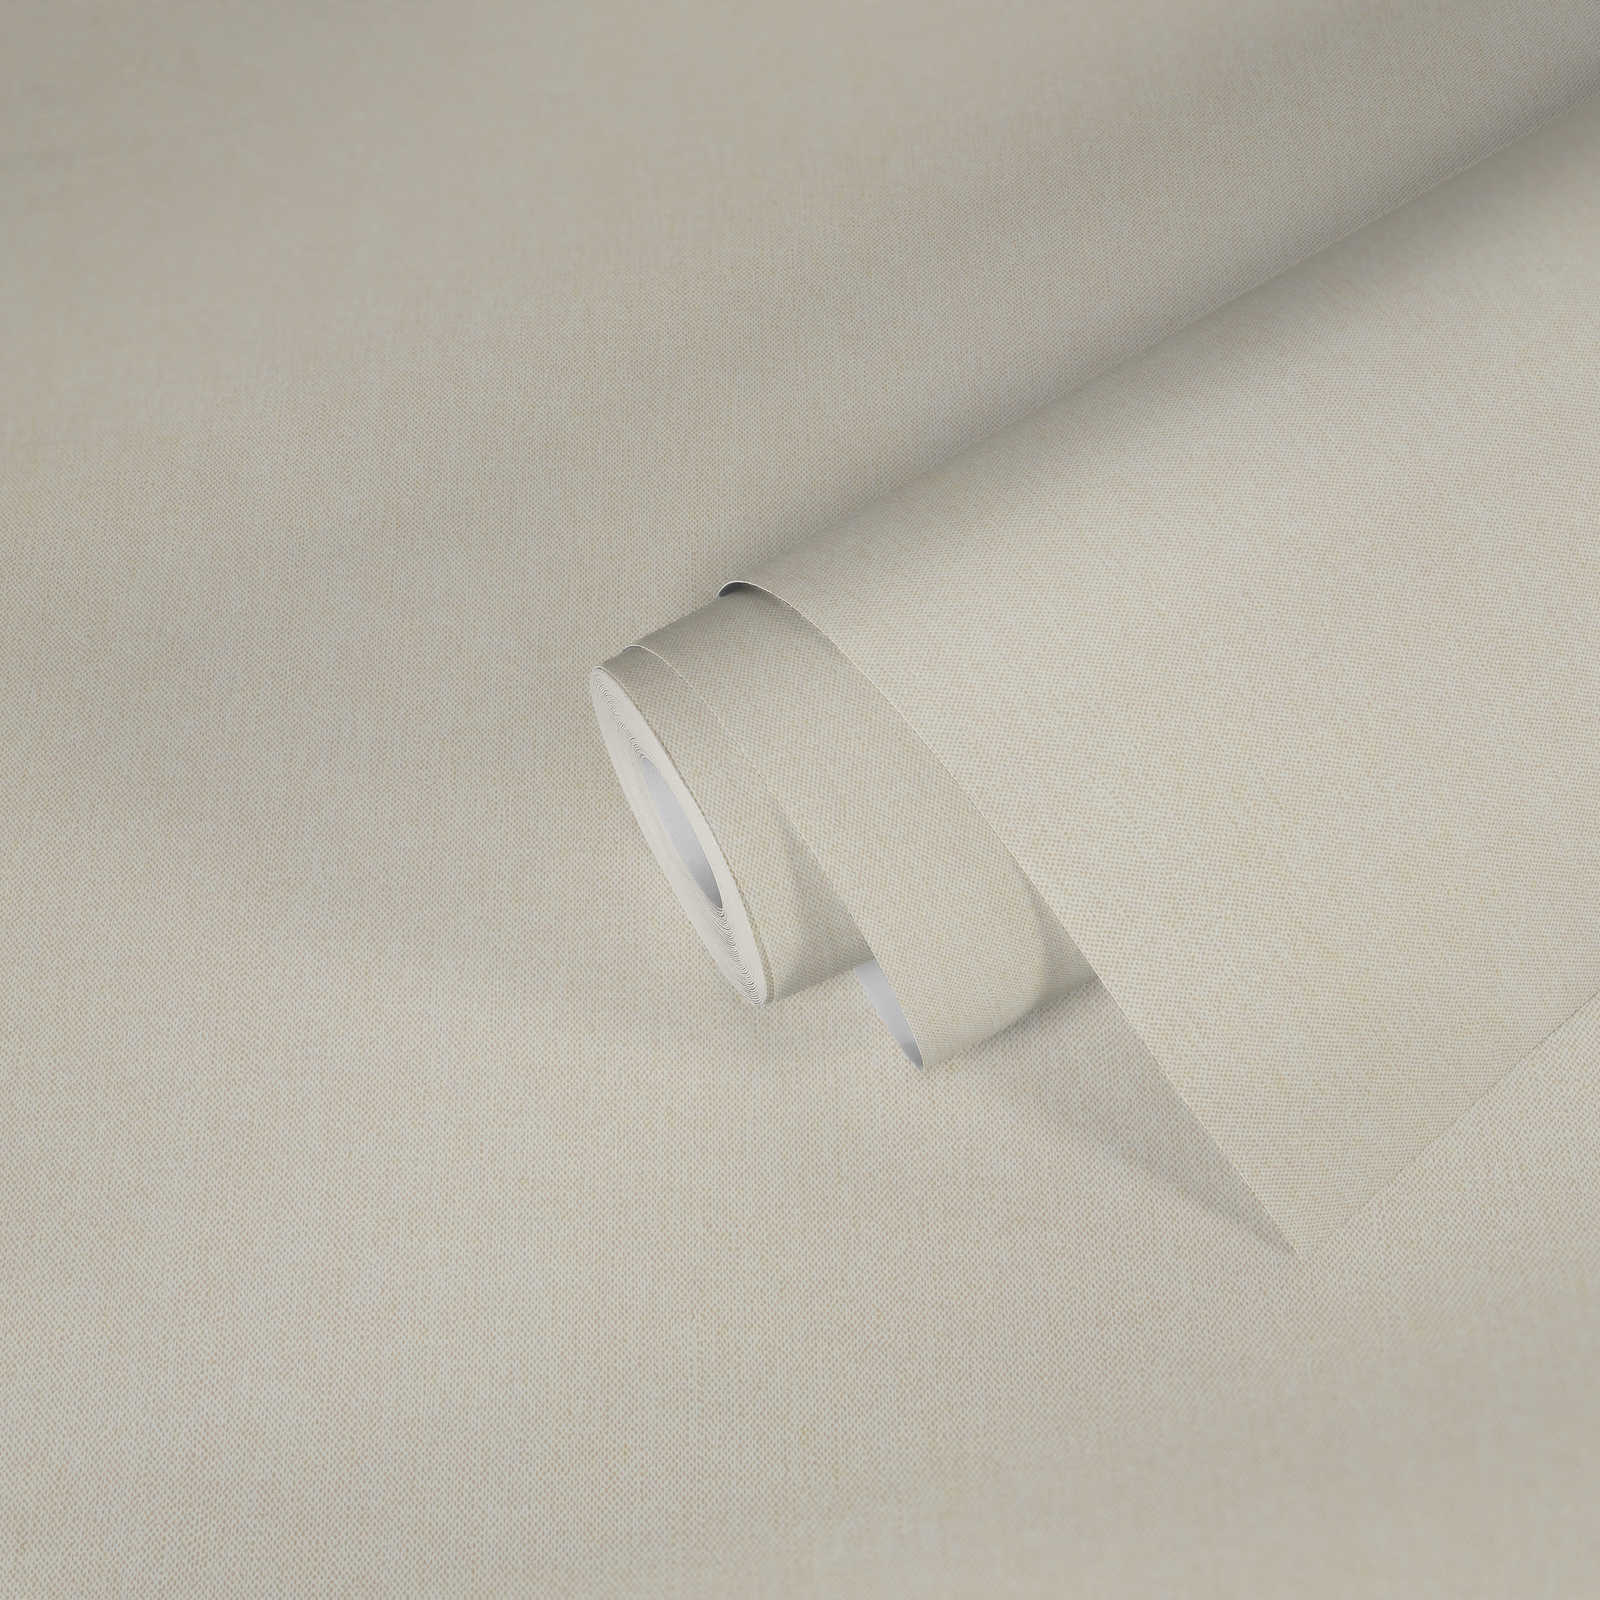             Papier peint Vintage blanc & mat avec structure textile - blanc, crème
        